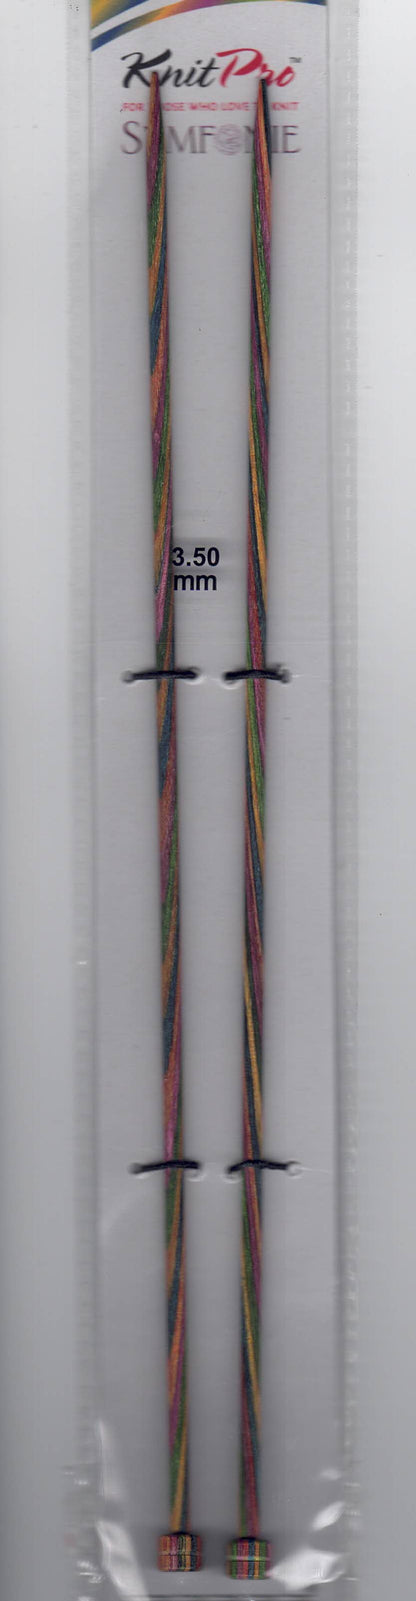 Knit Pro Symfonie Straight Knitting Needles 25cm